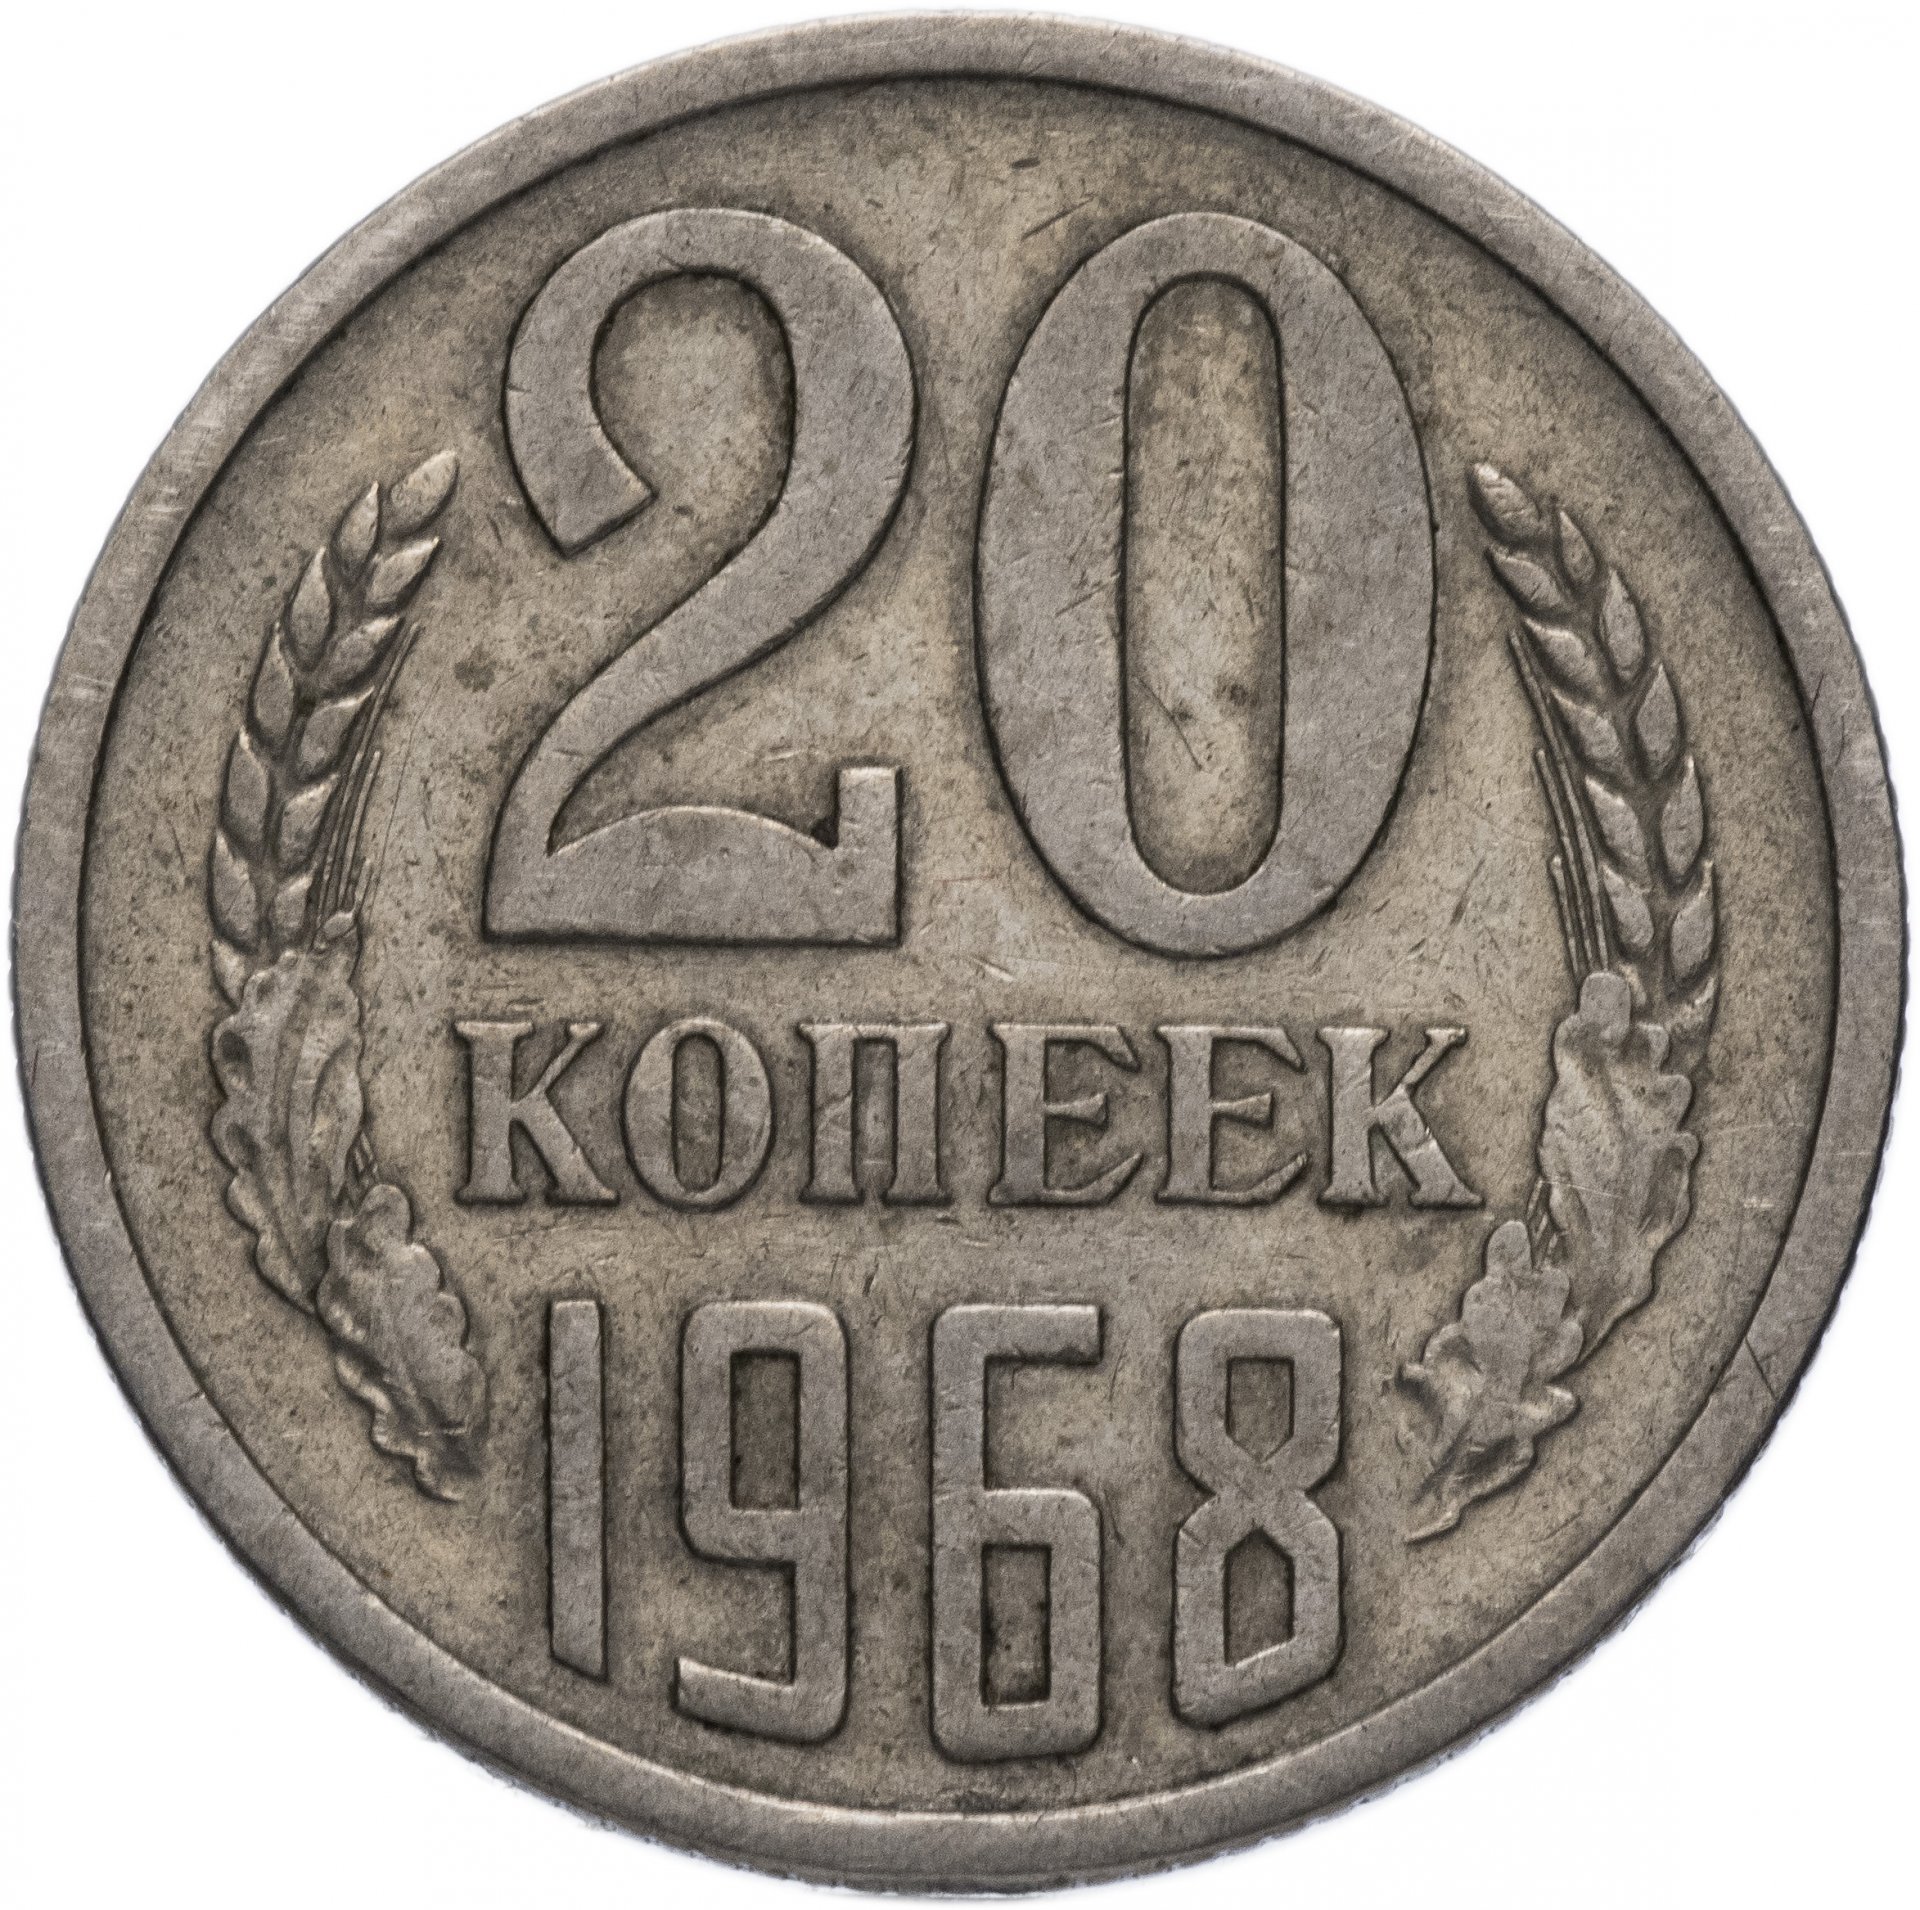 20 копеек пятьдесят. Монета. Монета 20 копеек 1961 года отчеканенная на латуни. Стоимость монет. Нумизматика цены.